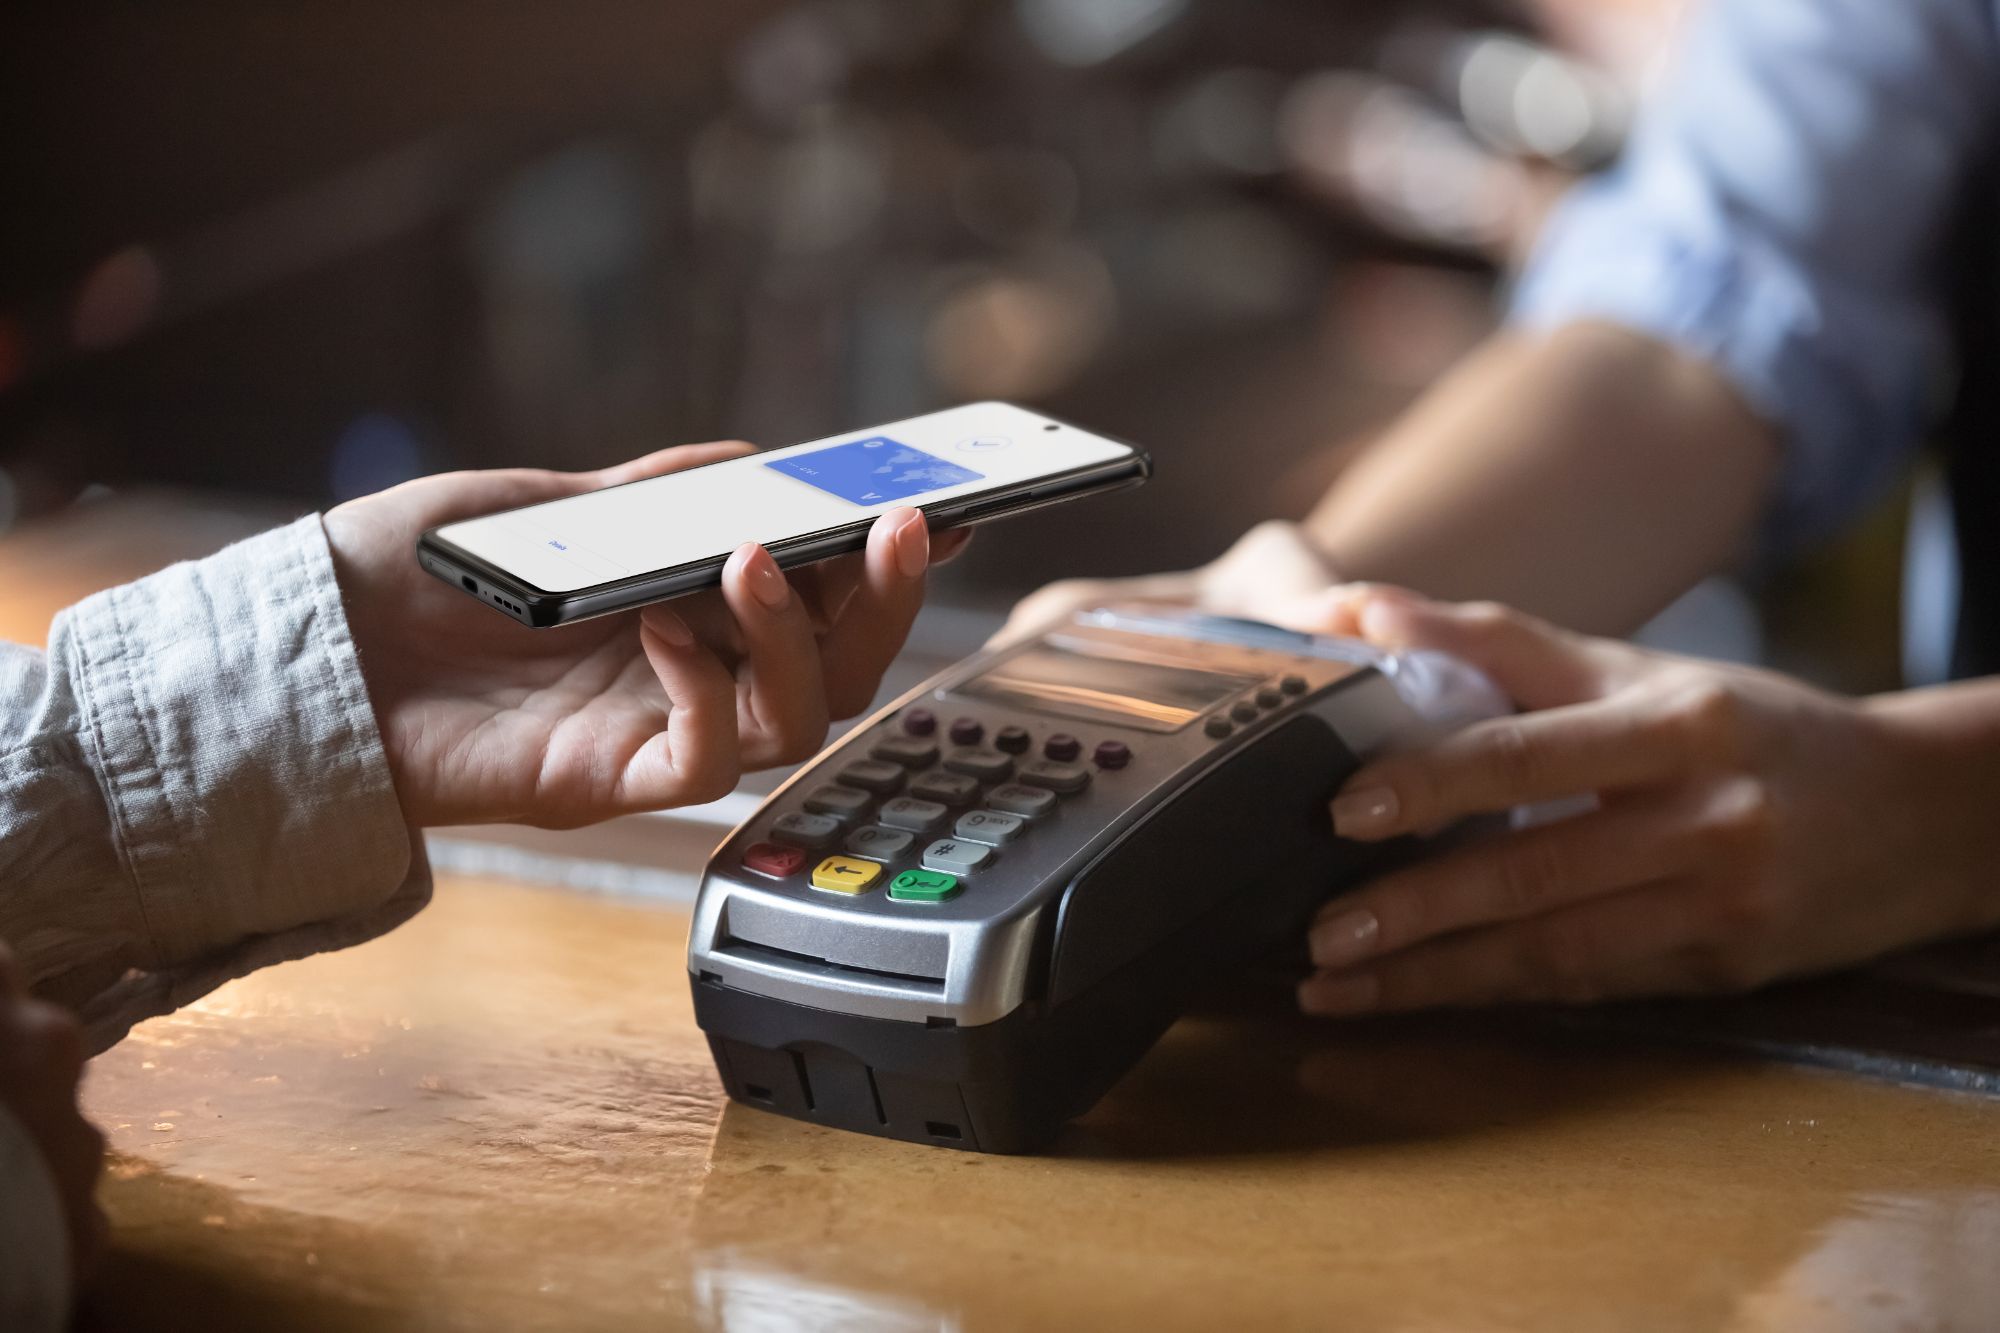 Passar um telefone Edge sobre um dispositivo de pagamento.